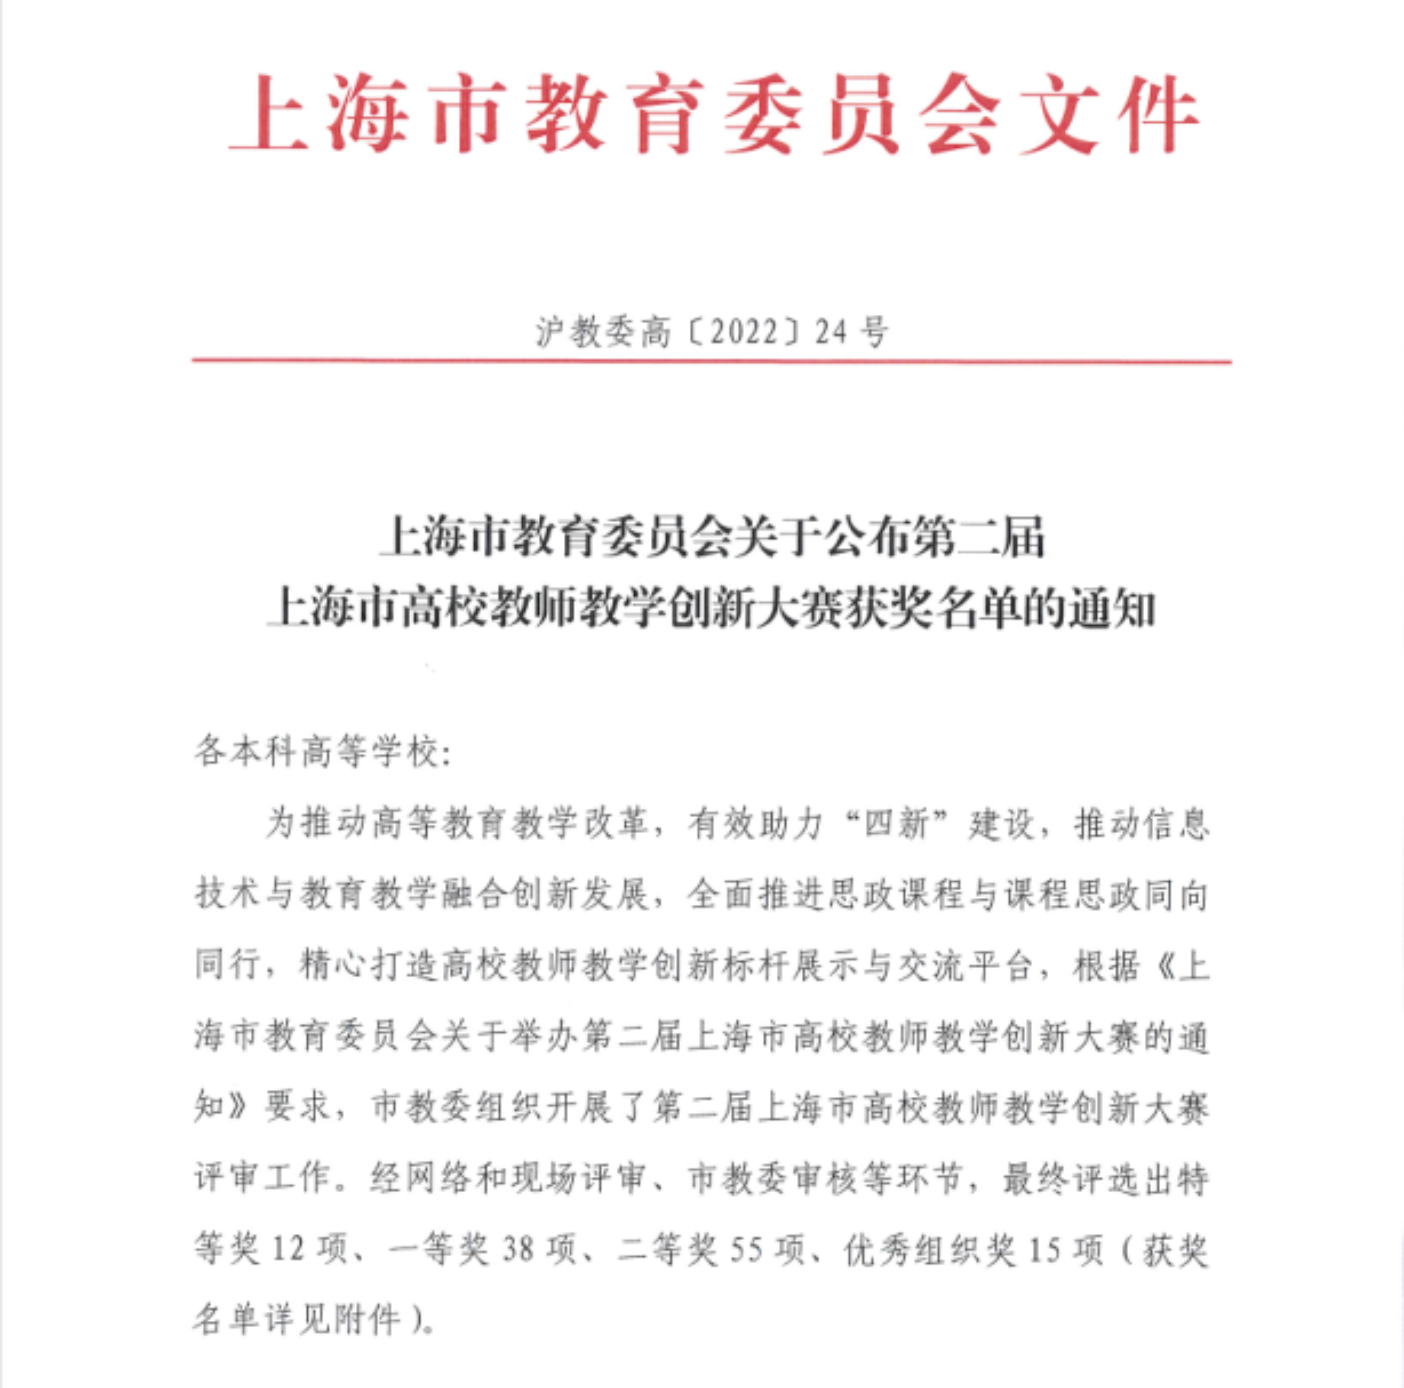 图为上海市教育委员会《关于公布第二届上海市高校教师教学创新大赛获奖名单的通知》